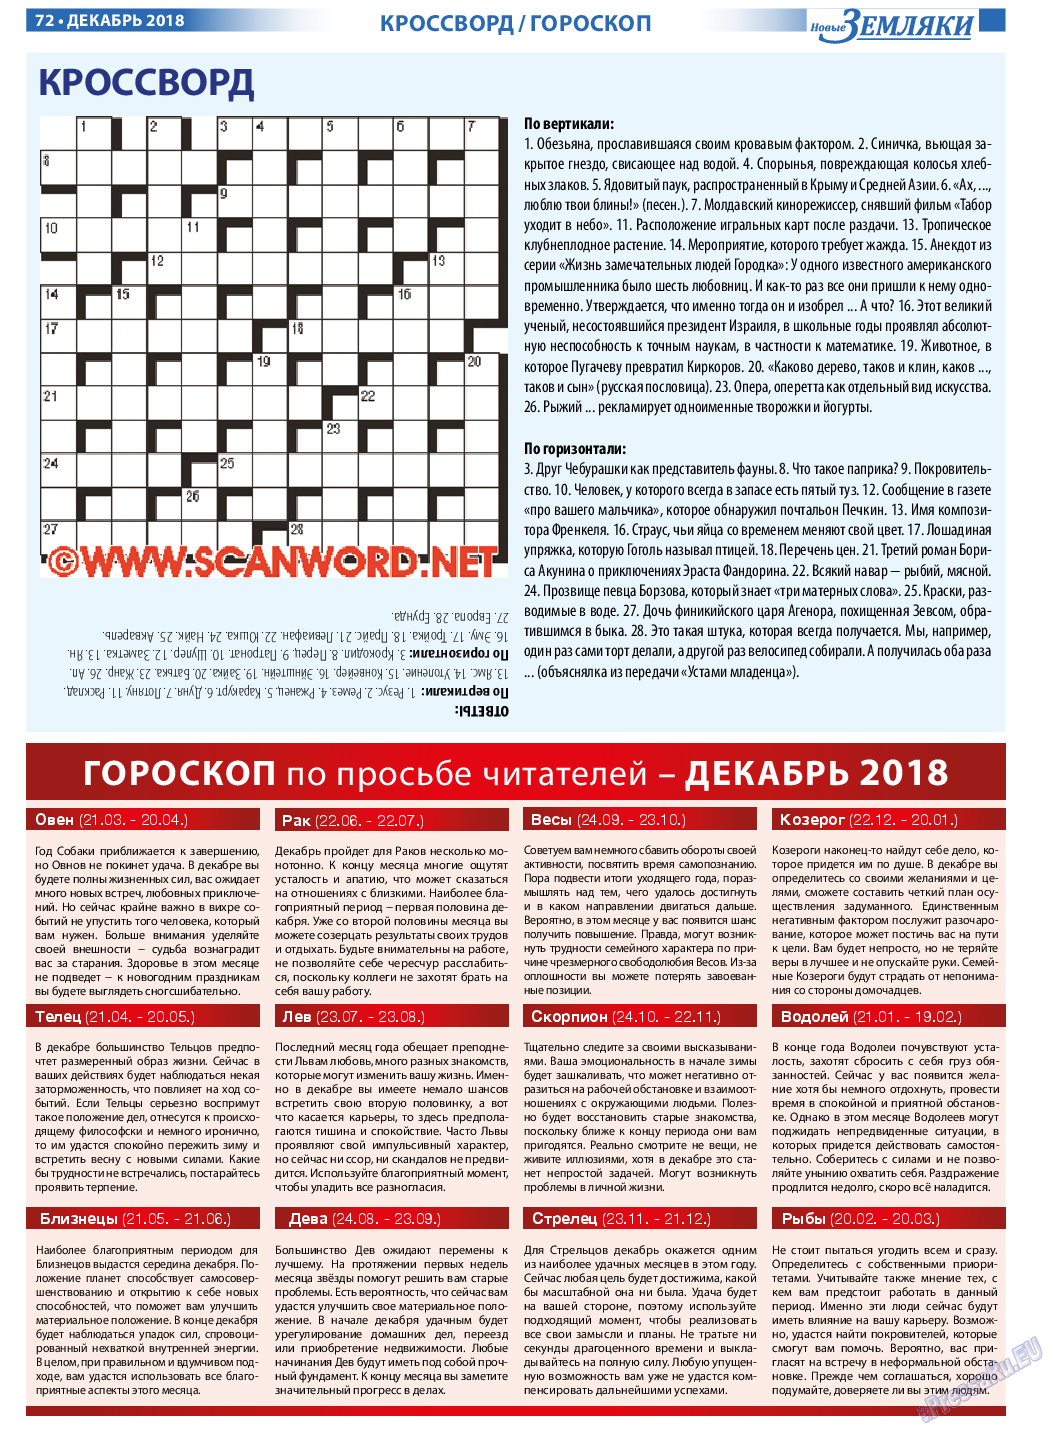 Новые Земляки, газета. 2018 №12 стр.72